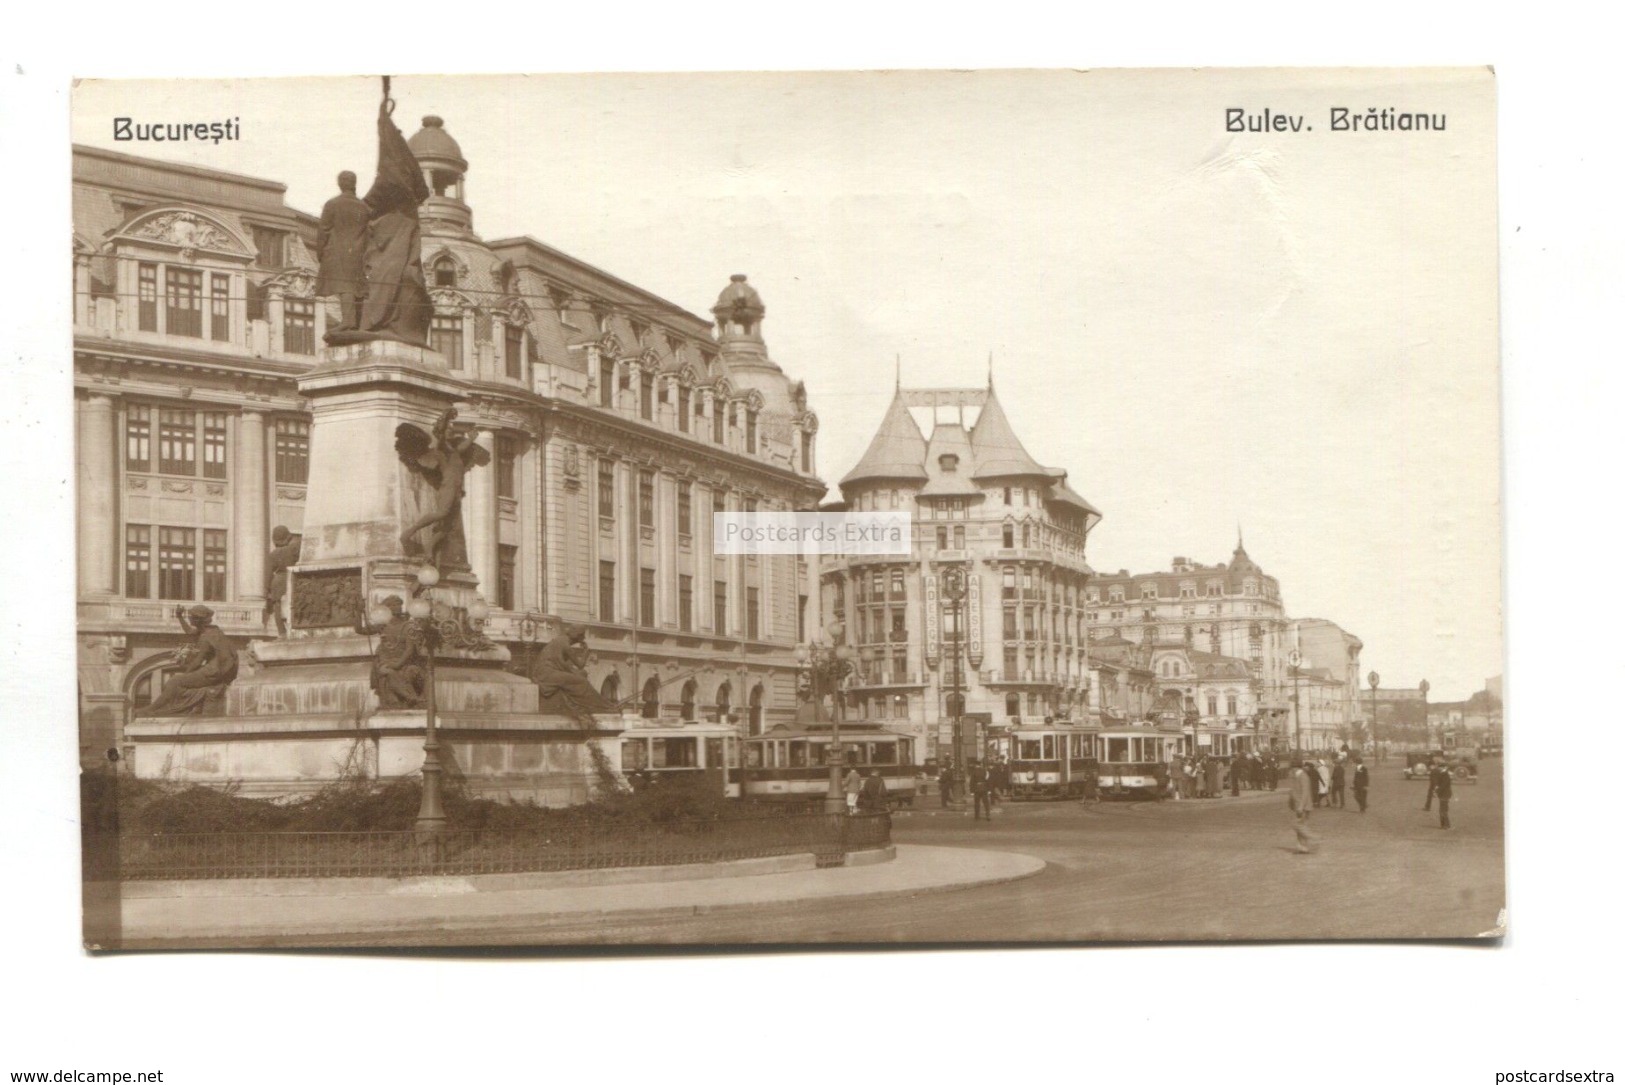 Bucaresti, Bucharest - Boulevard Bratianu, Trams - 1931 Used Romania Real Photo Postcard - Romania